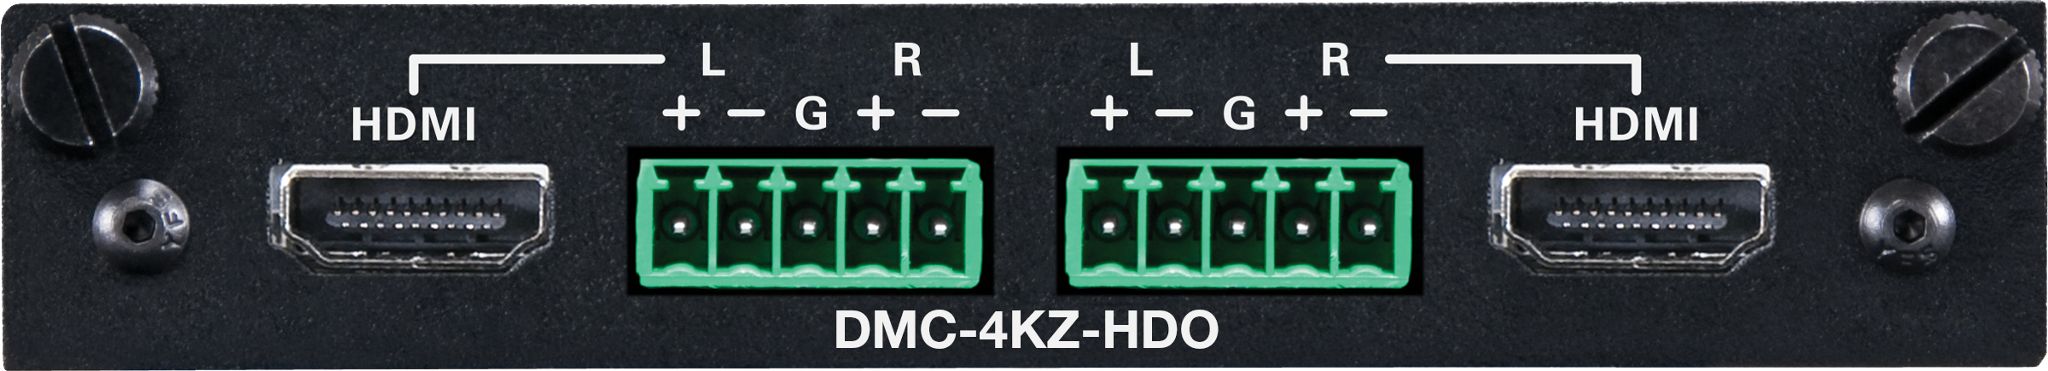 DMC-4KZ-HDO